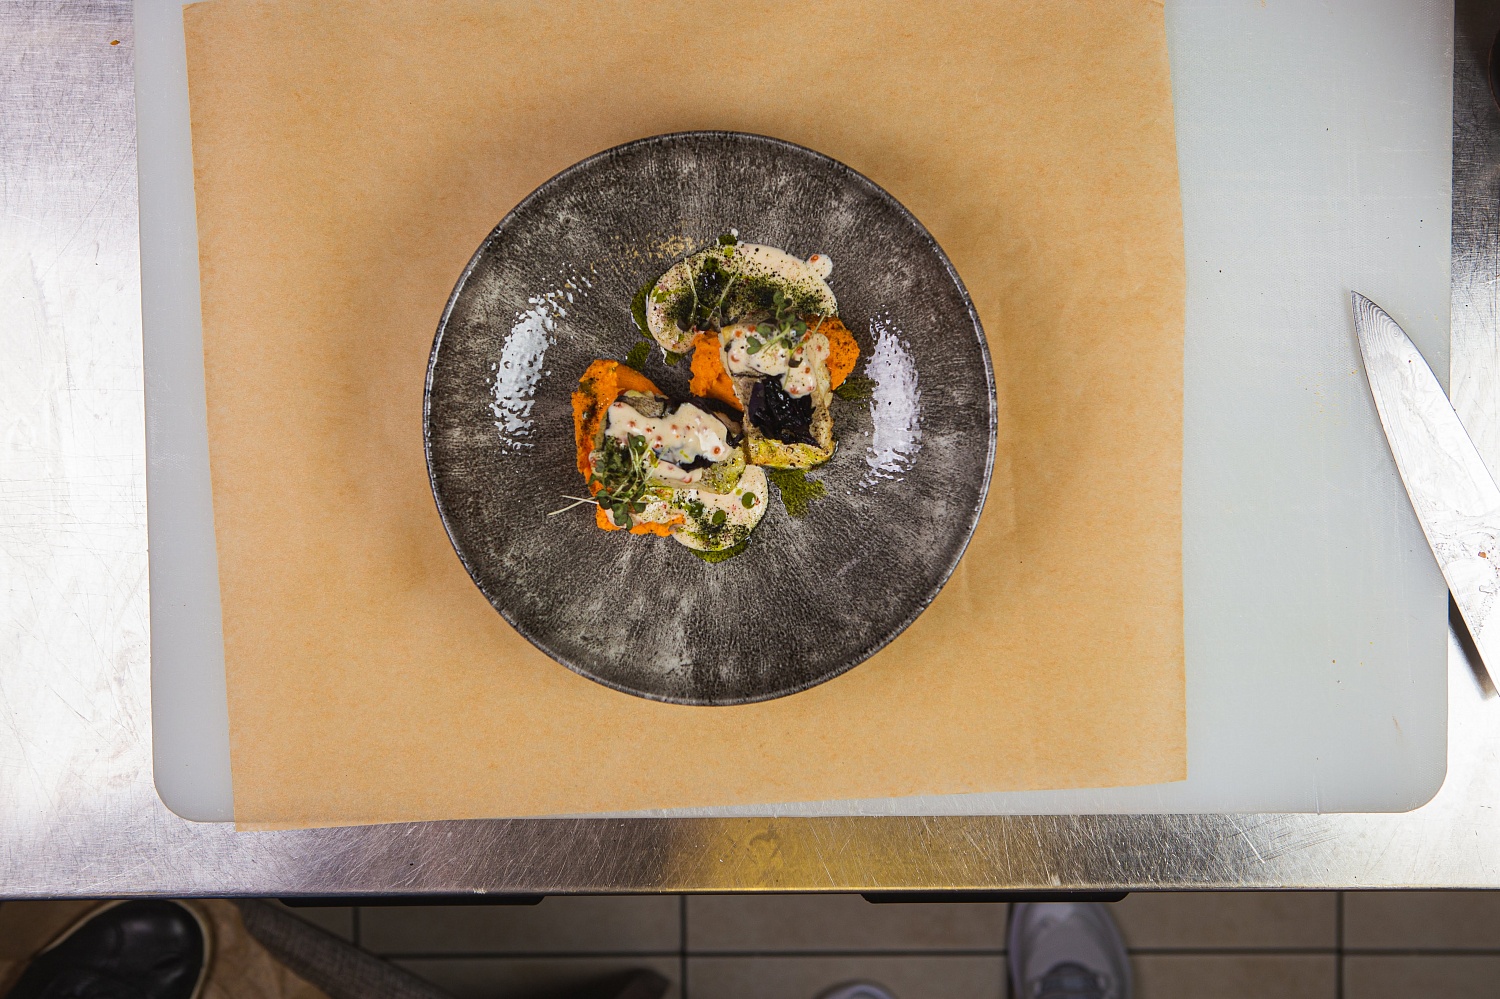 На тарелку выкладываем две кнели с кремом из батата, сверху кладем запеченную пикшу, поливаем соусом и украшаем кресс-салатом